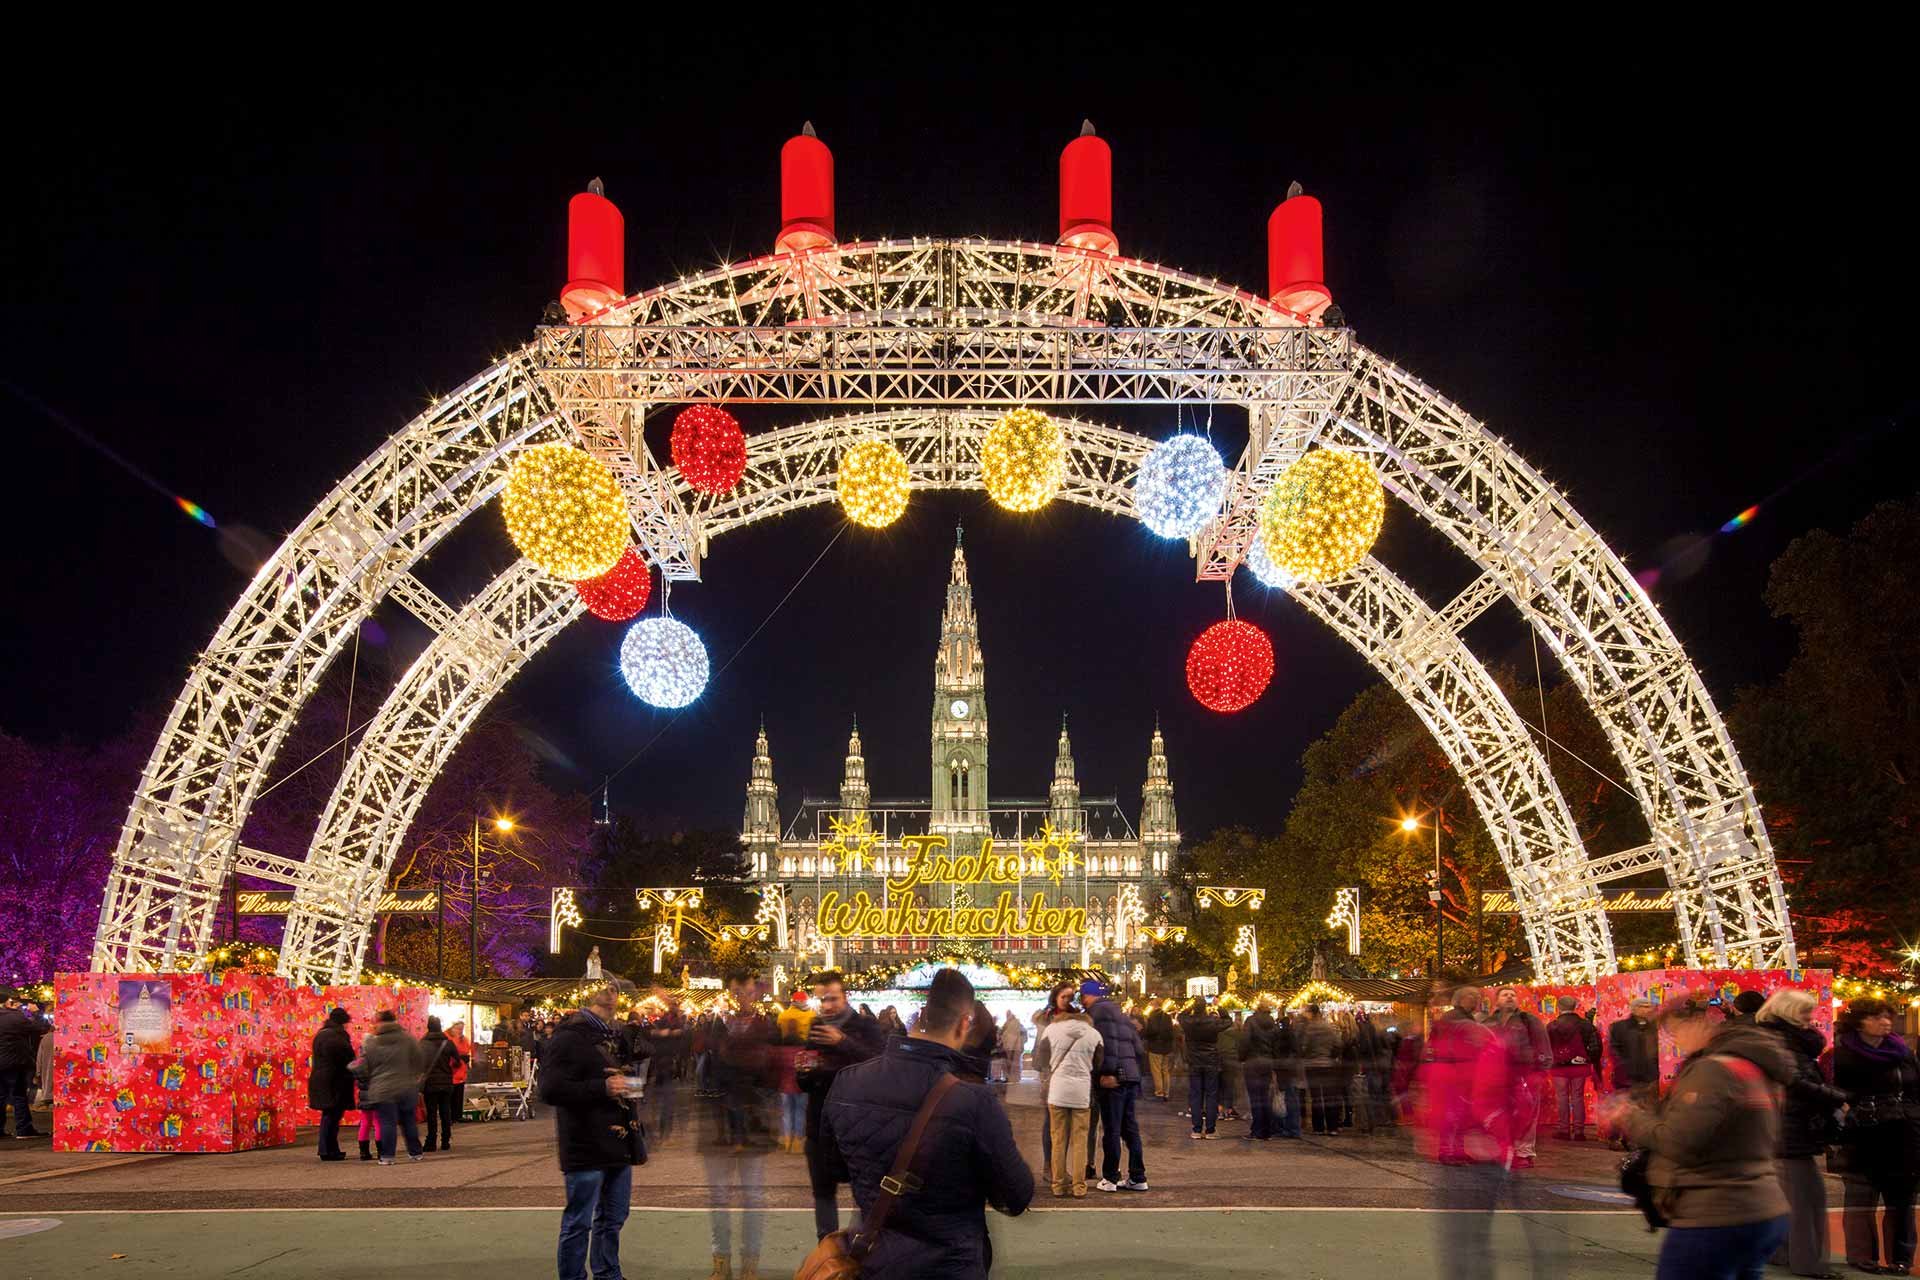 Am Rathausplatz wird ein Weihnachtstraum wahr ...